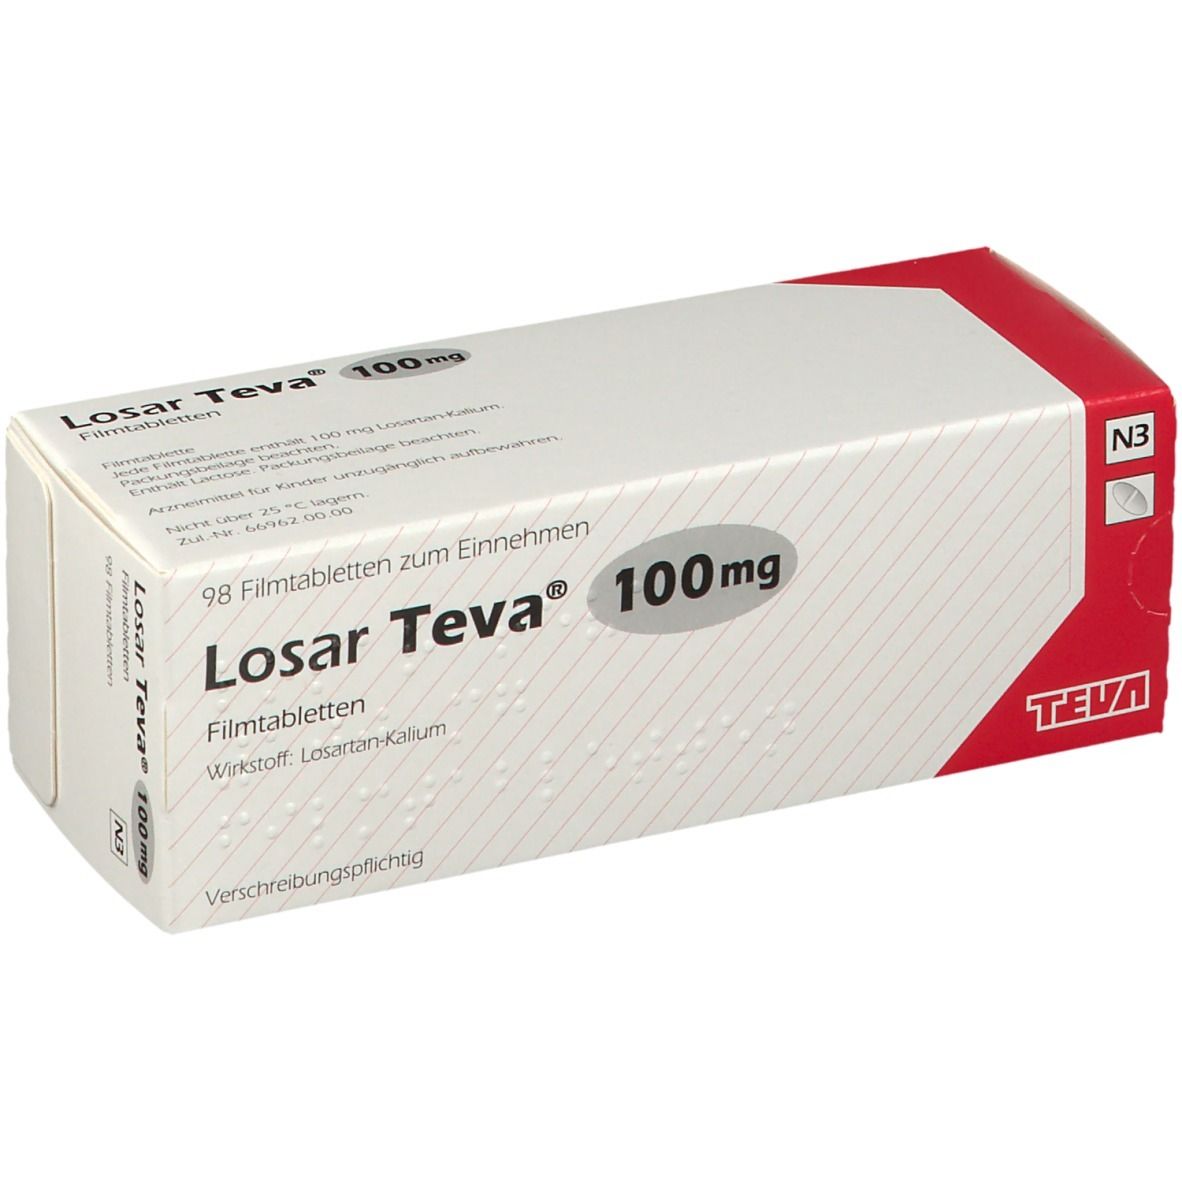 Losar Teva® 100 mg 98 - shop-apotheke.com